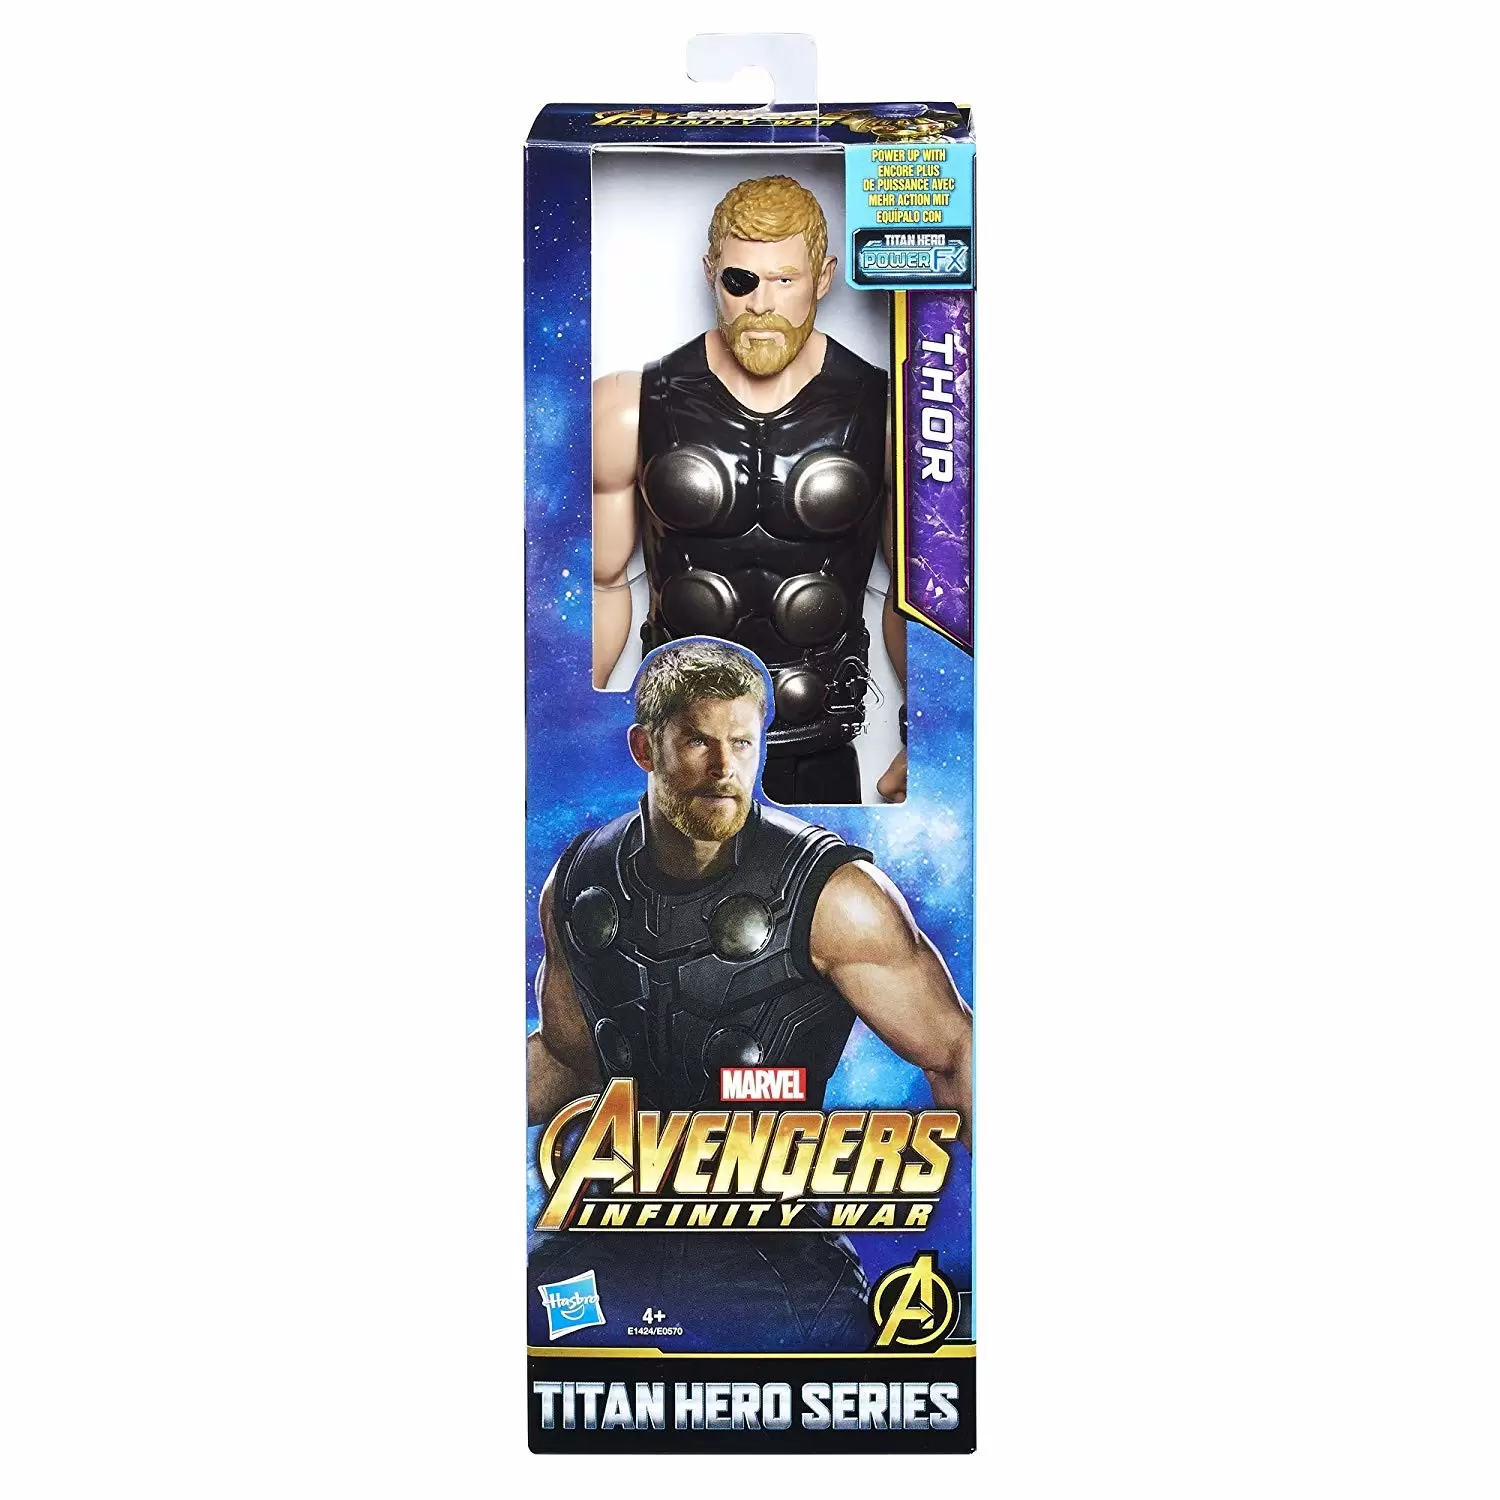  Avengers Marvel Infinity War Titan Hero Power FX Star